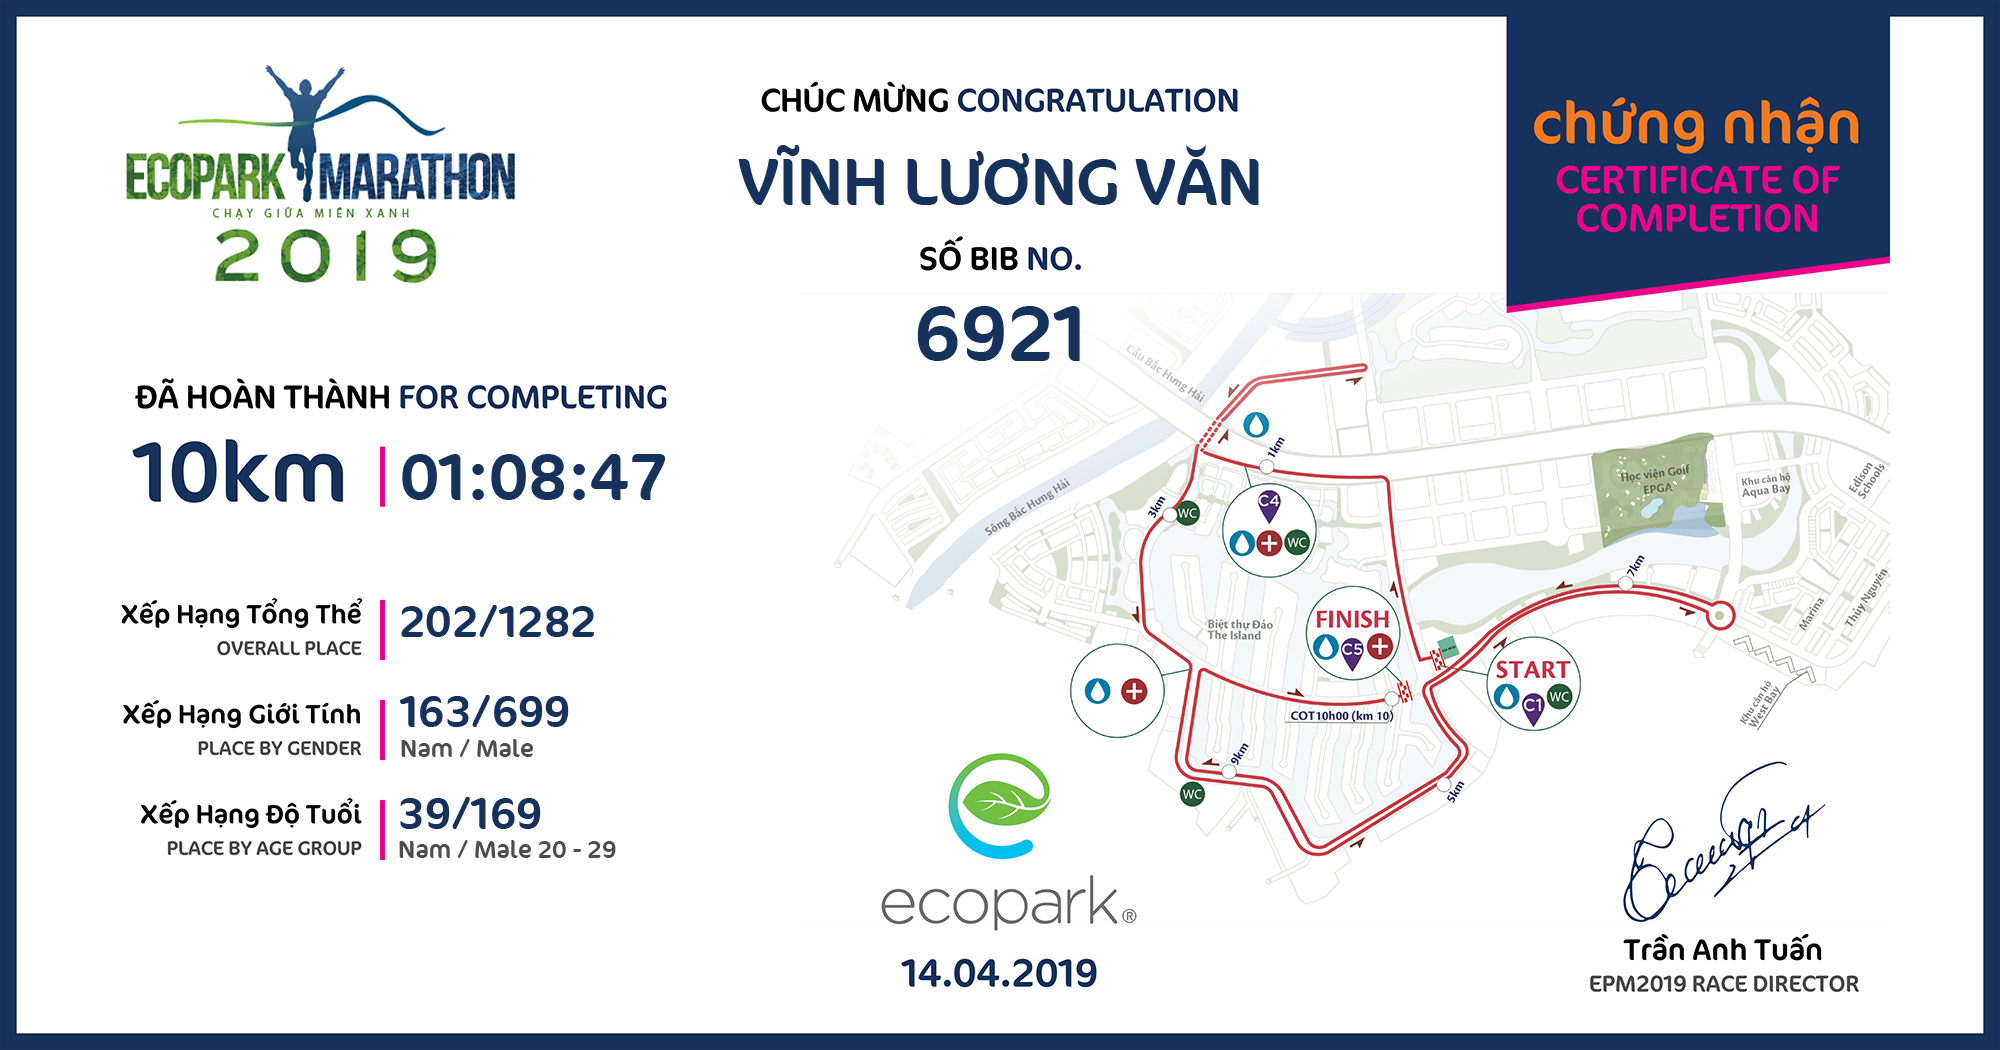 6921 - Vĩnh Lương Văn